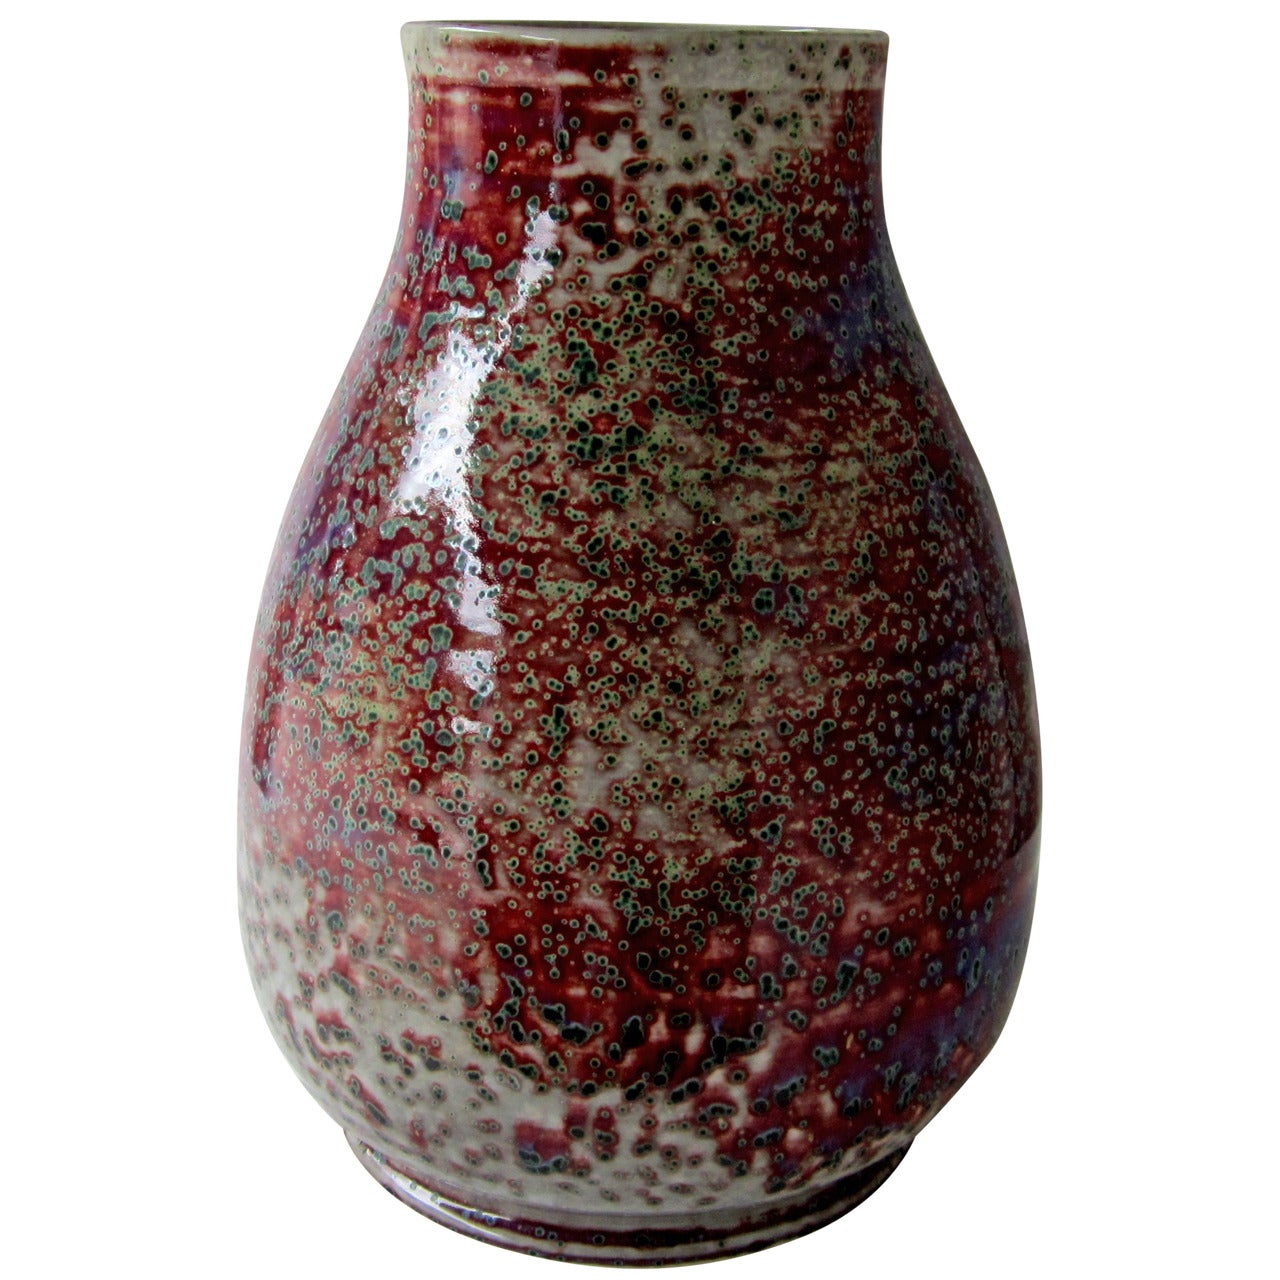 Ruskin Art Pottery Vase